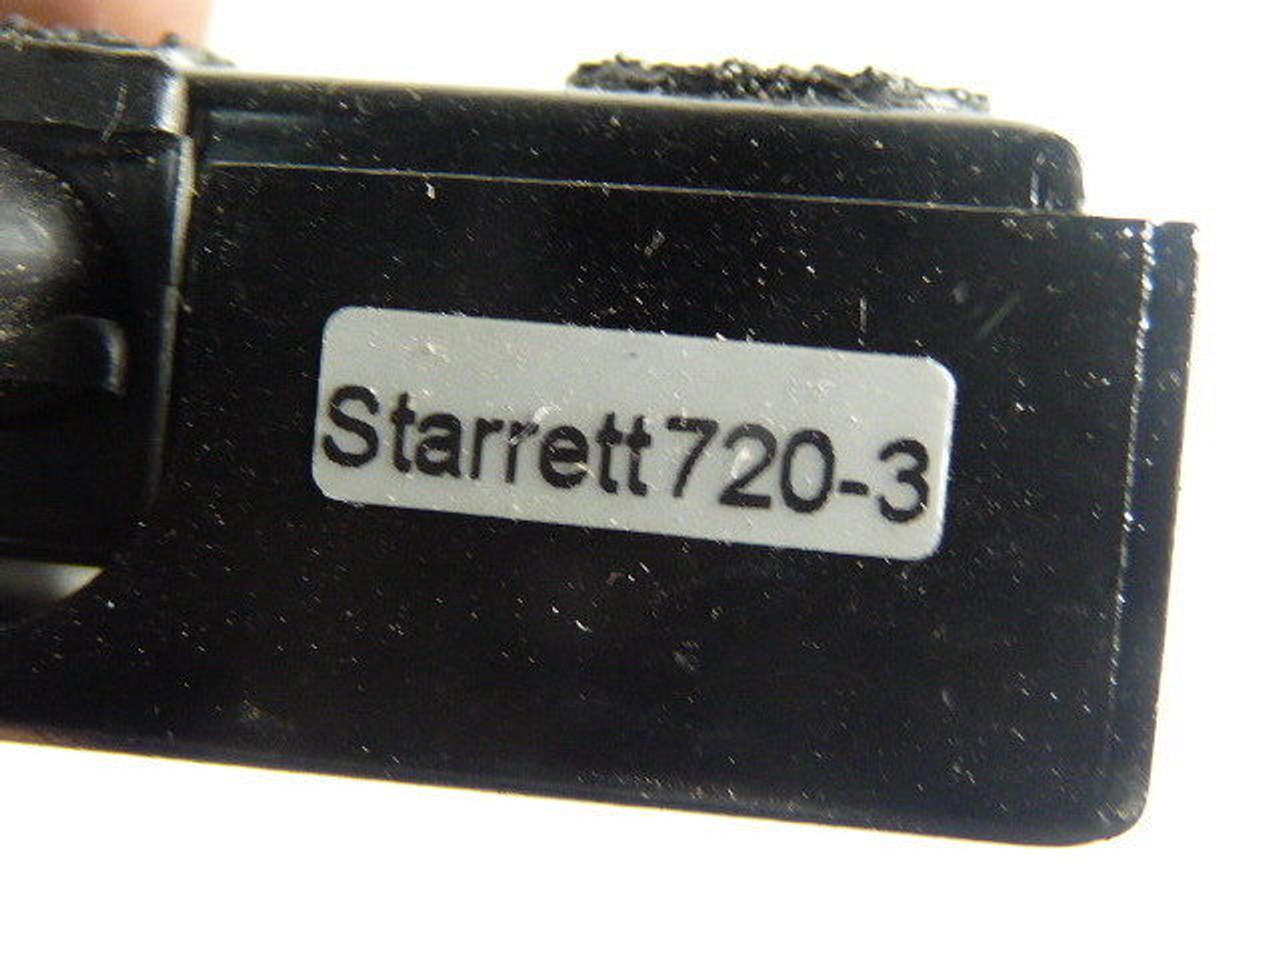 Starrett 720-3 Foot Switch USED